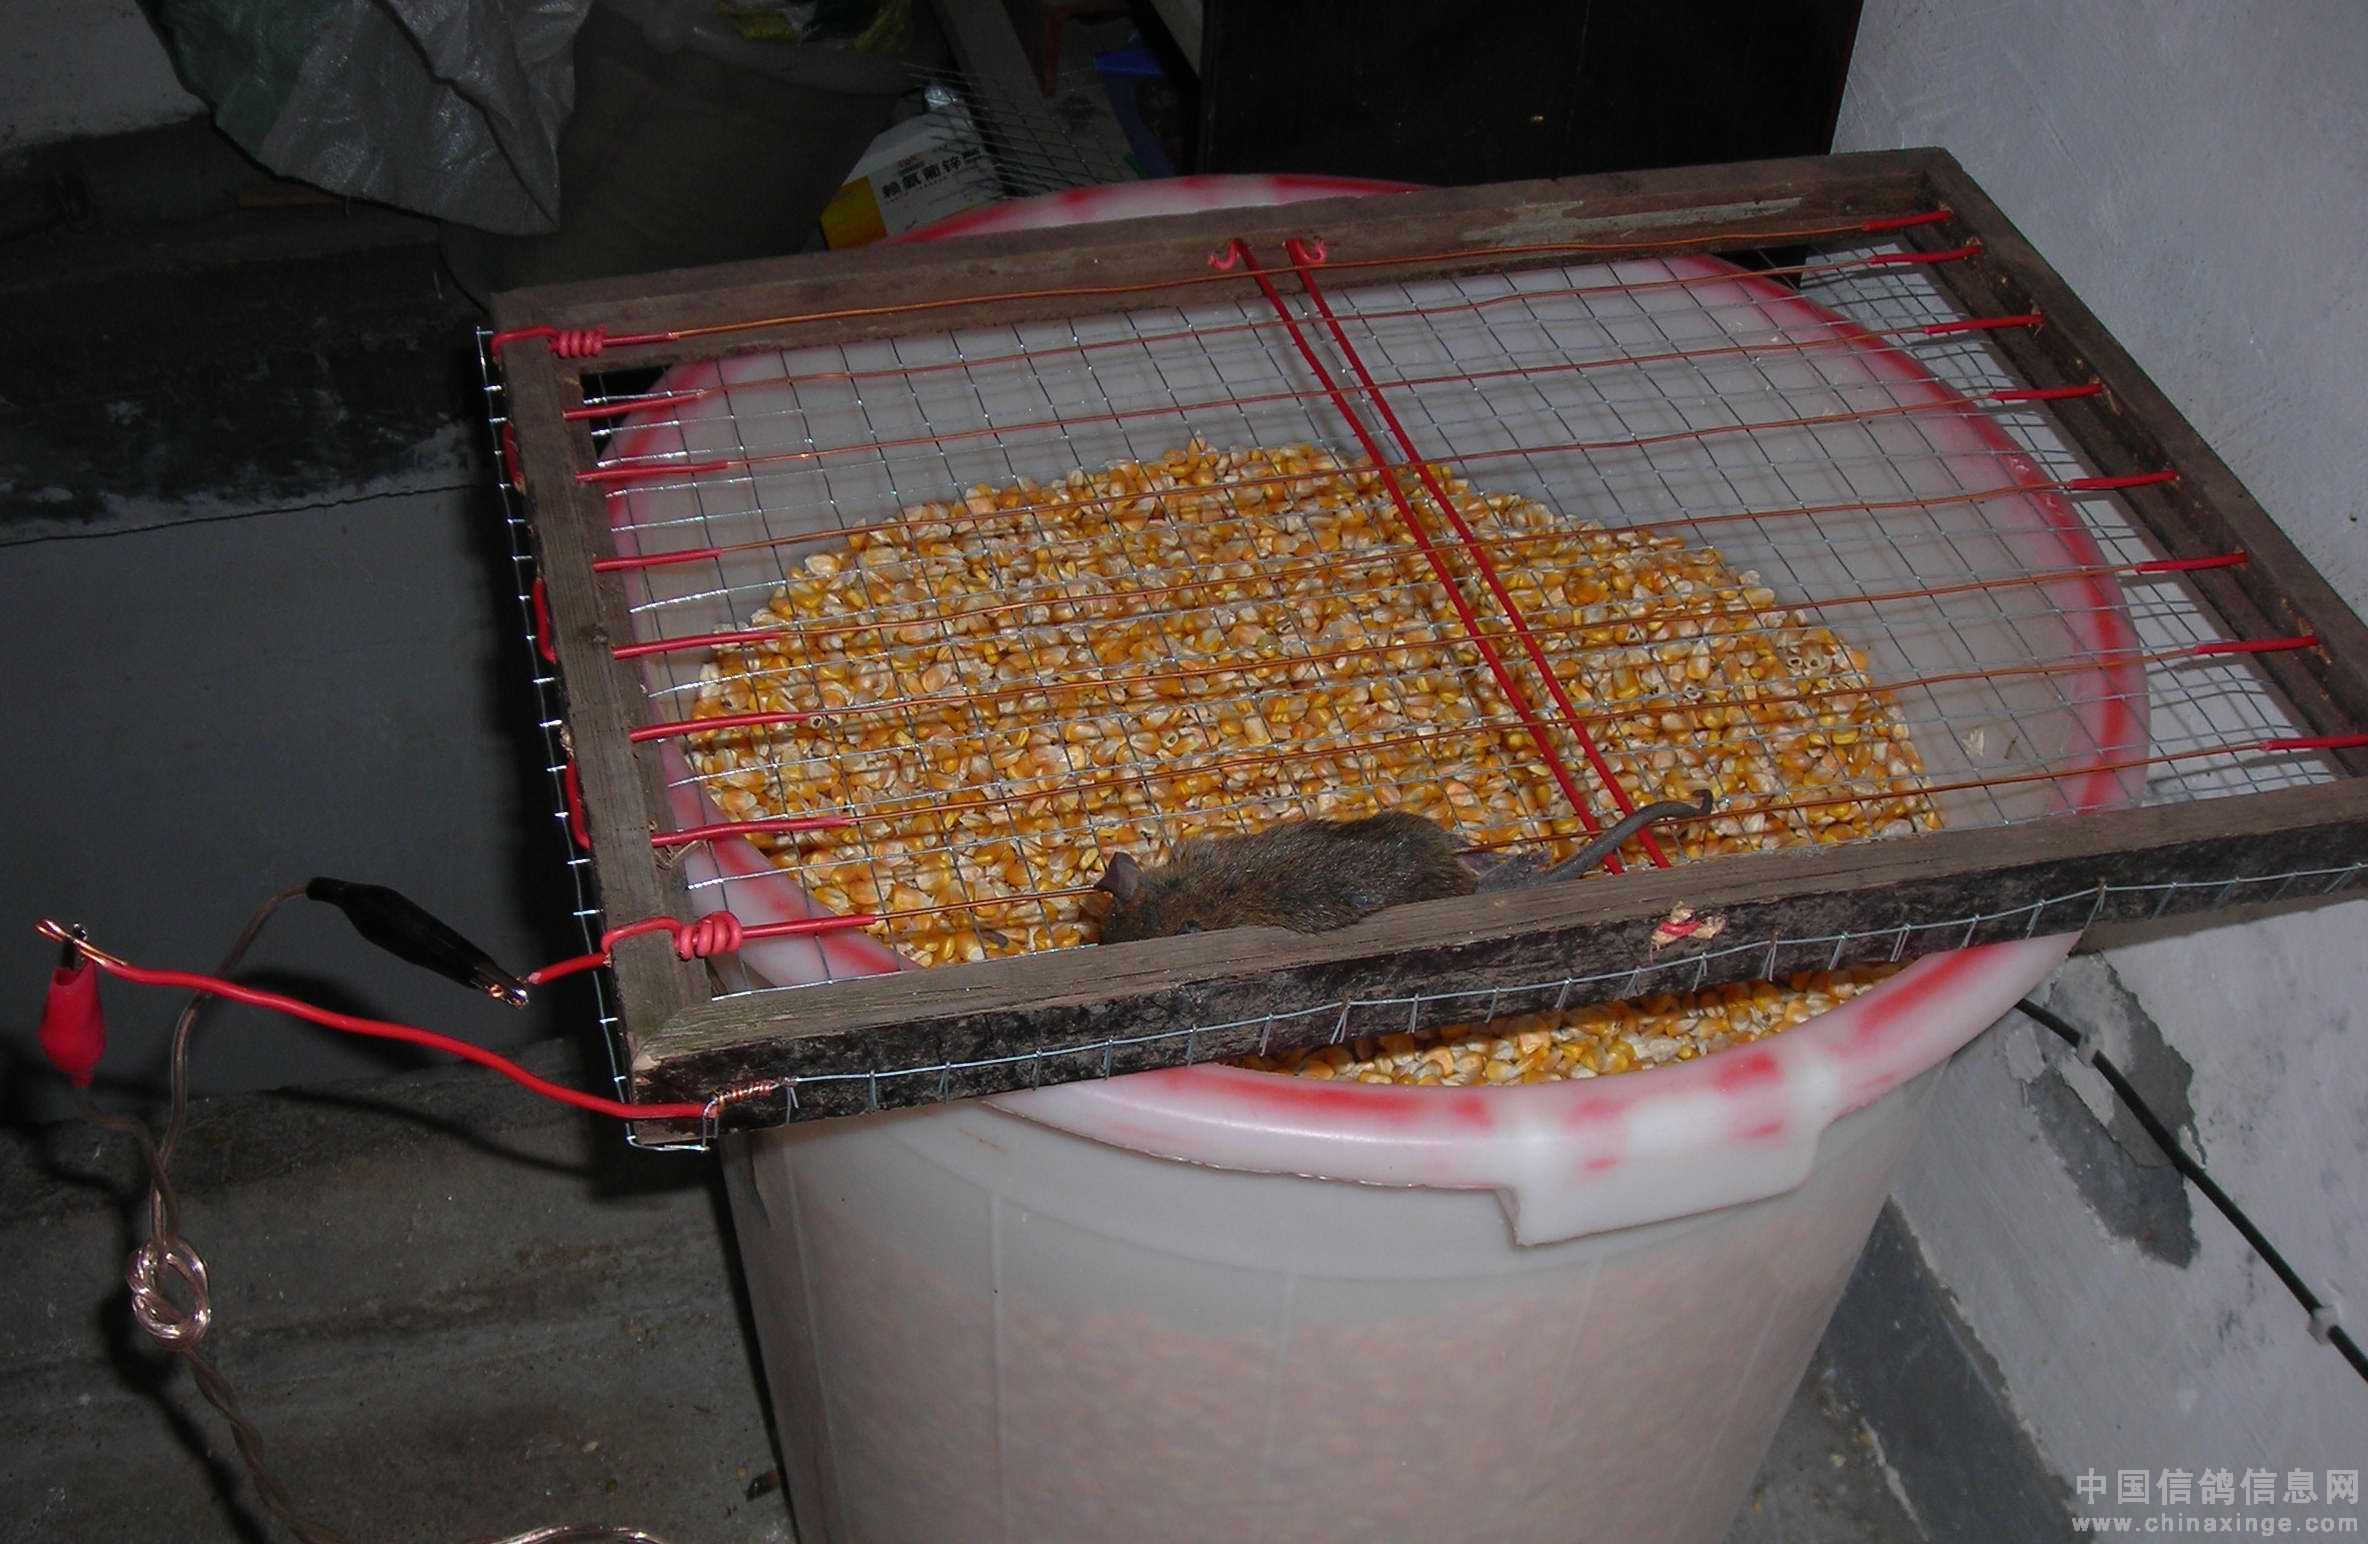 捕鼠器一制作完成,把它放在盛装玉米的塑料桶上,塑料桶里的玉米就是